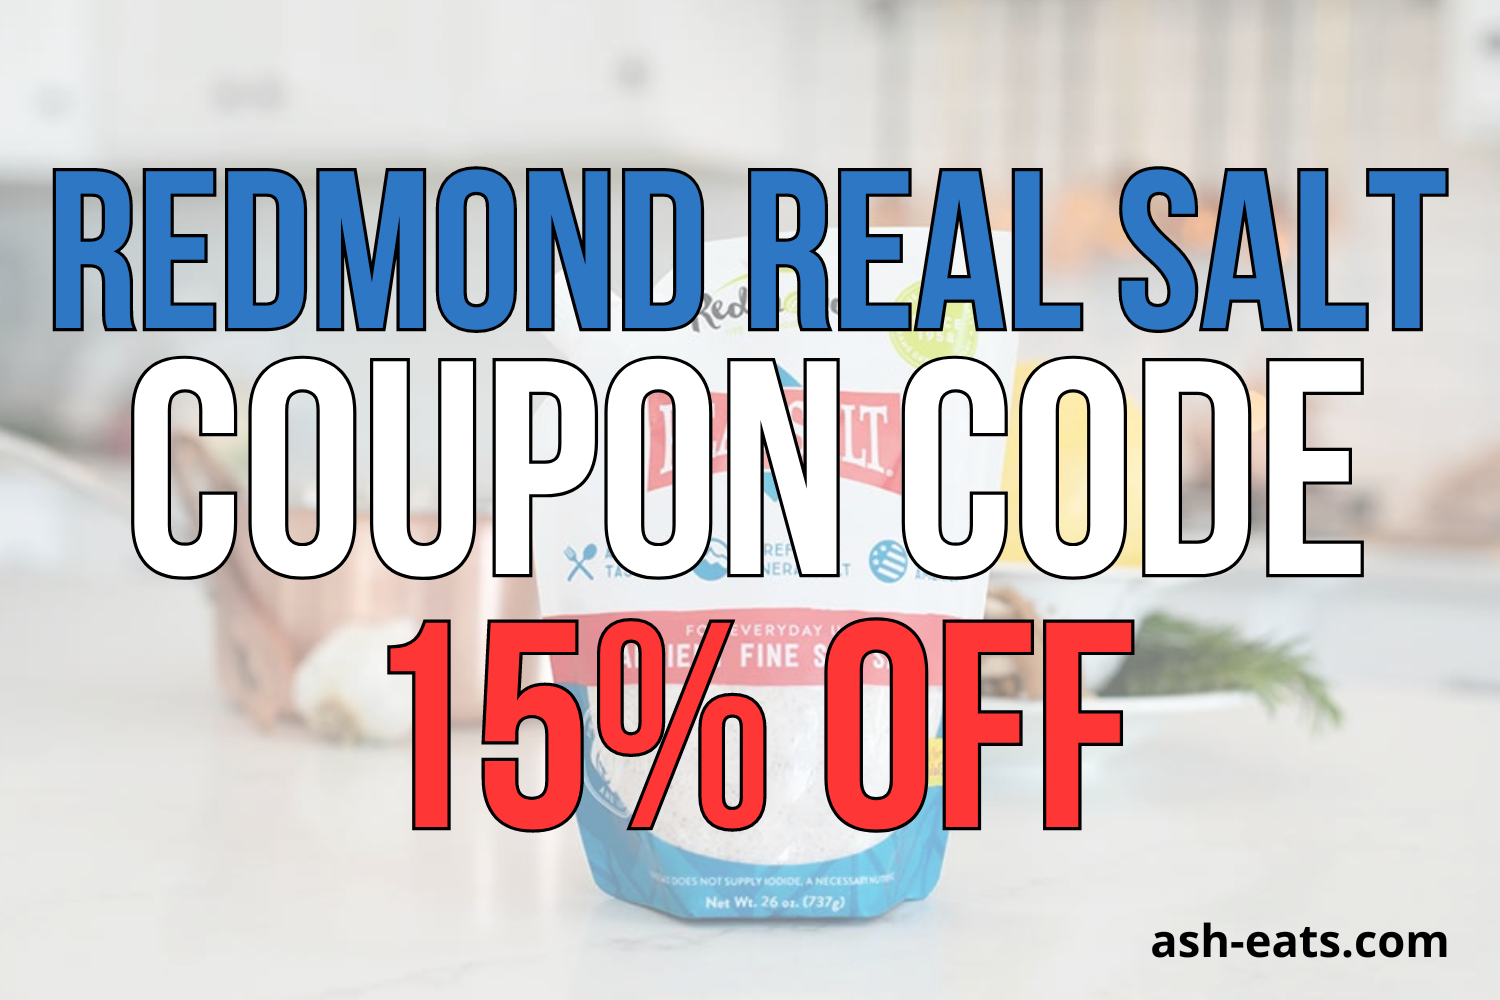 redmond real salt coupon code